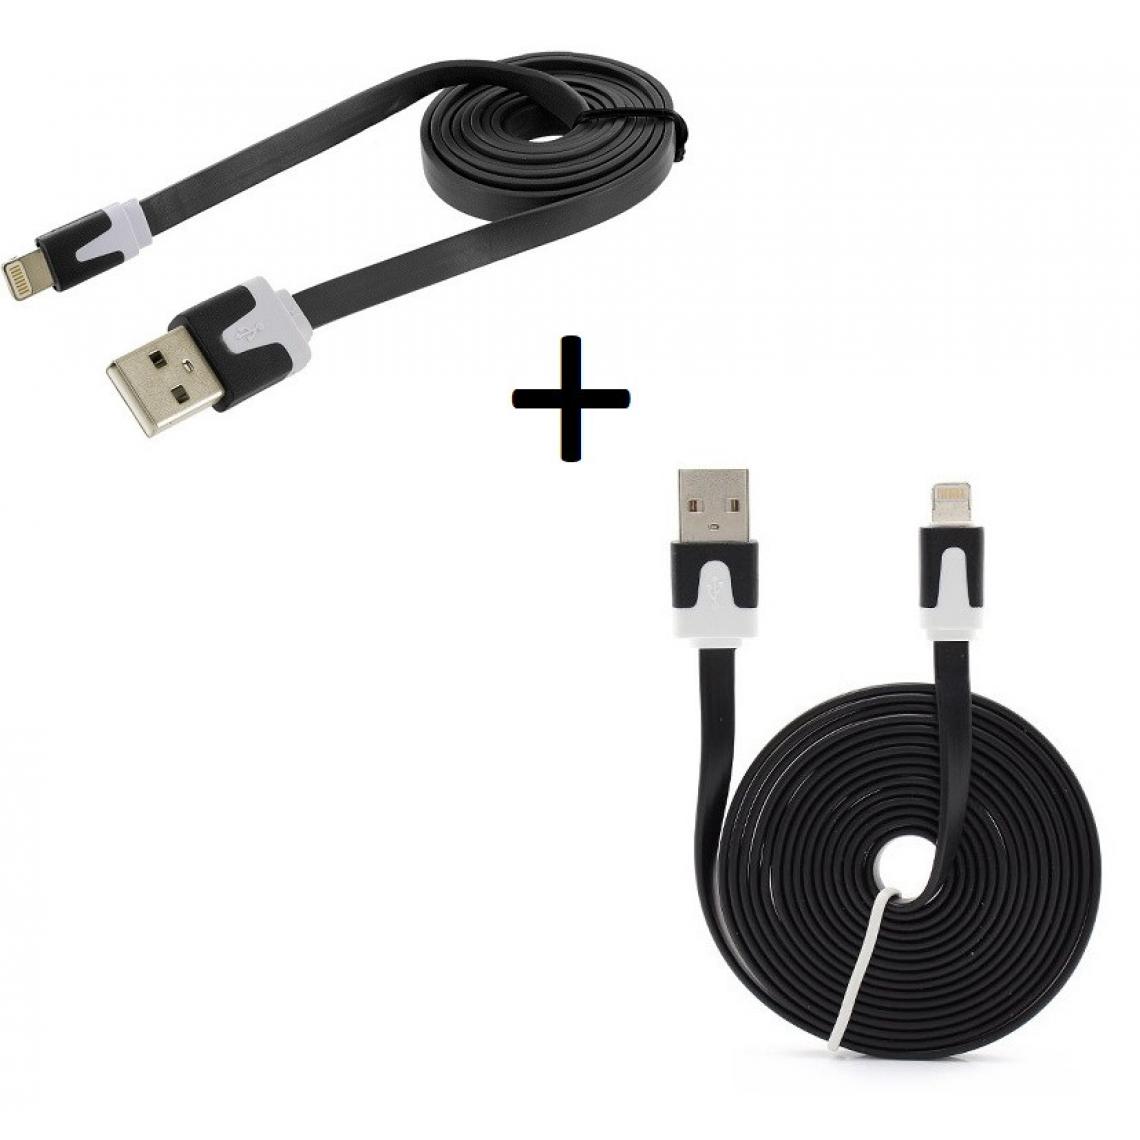 Shot - Pack Chargeur pour IPHONE 11 Lightning (Cable Noodle 3m + Cable Noodle 1m) USB APPLE IOS (NOIR) - Chargeur secteur téléphone